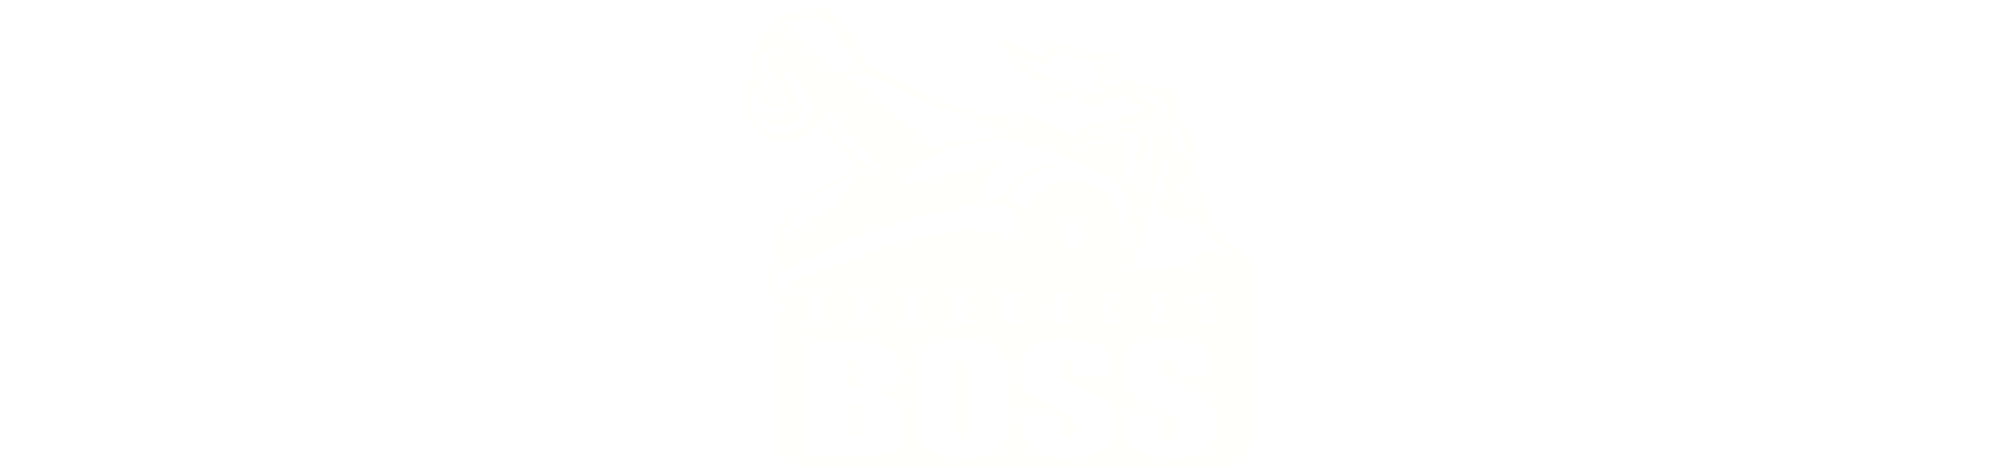 Desguaces Boss